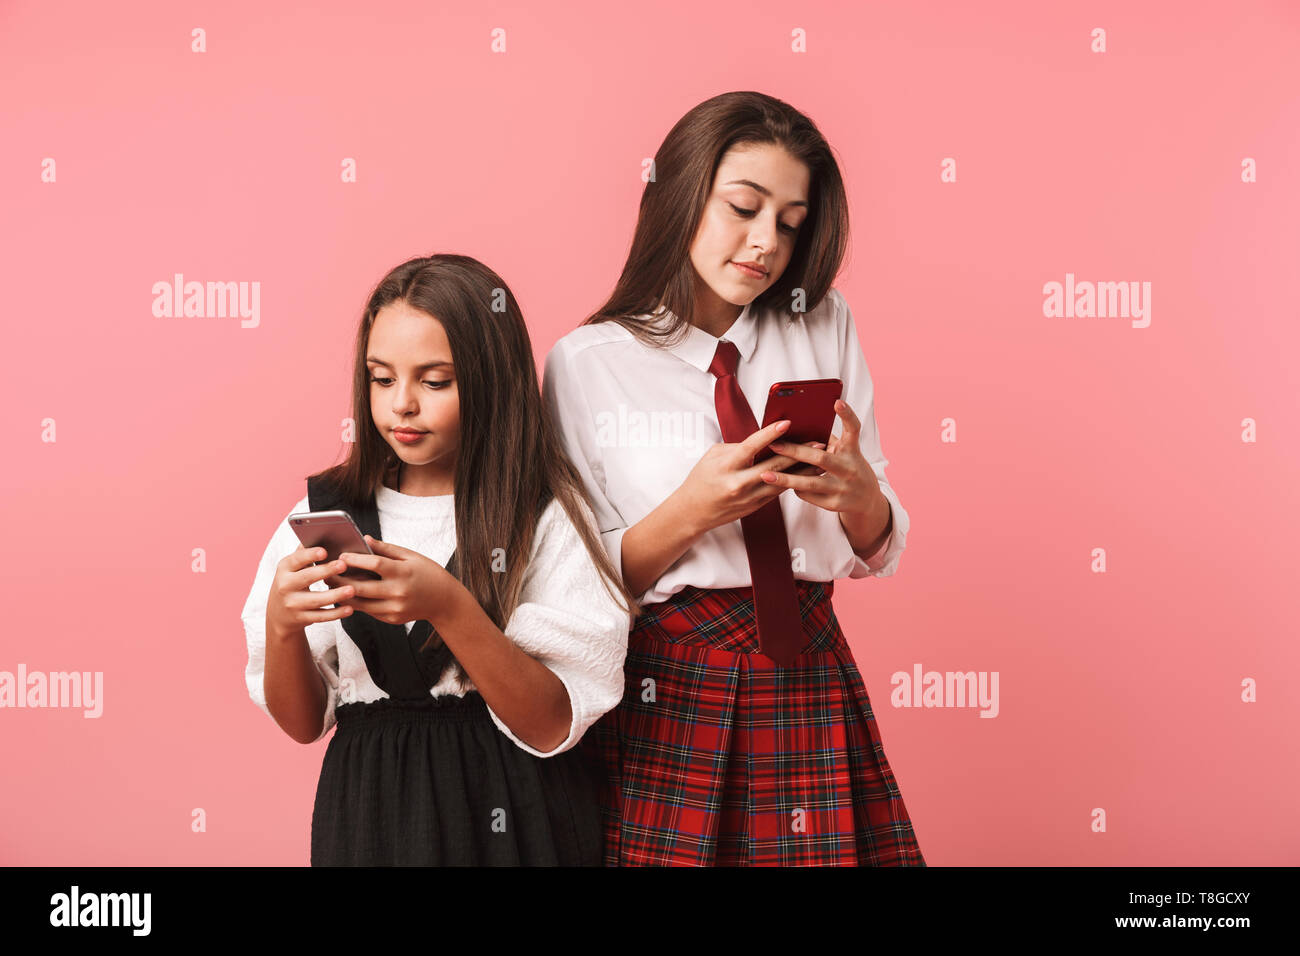 Ritratto di belle ragazze in uniforme scolastica utilizzando gli smartphone in piedi mentre isolate su sfondo rosso Foto Stock